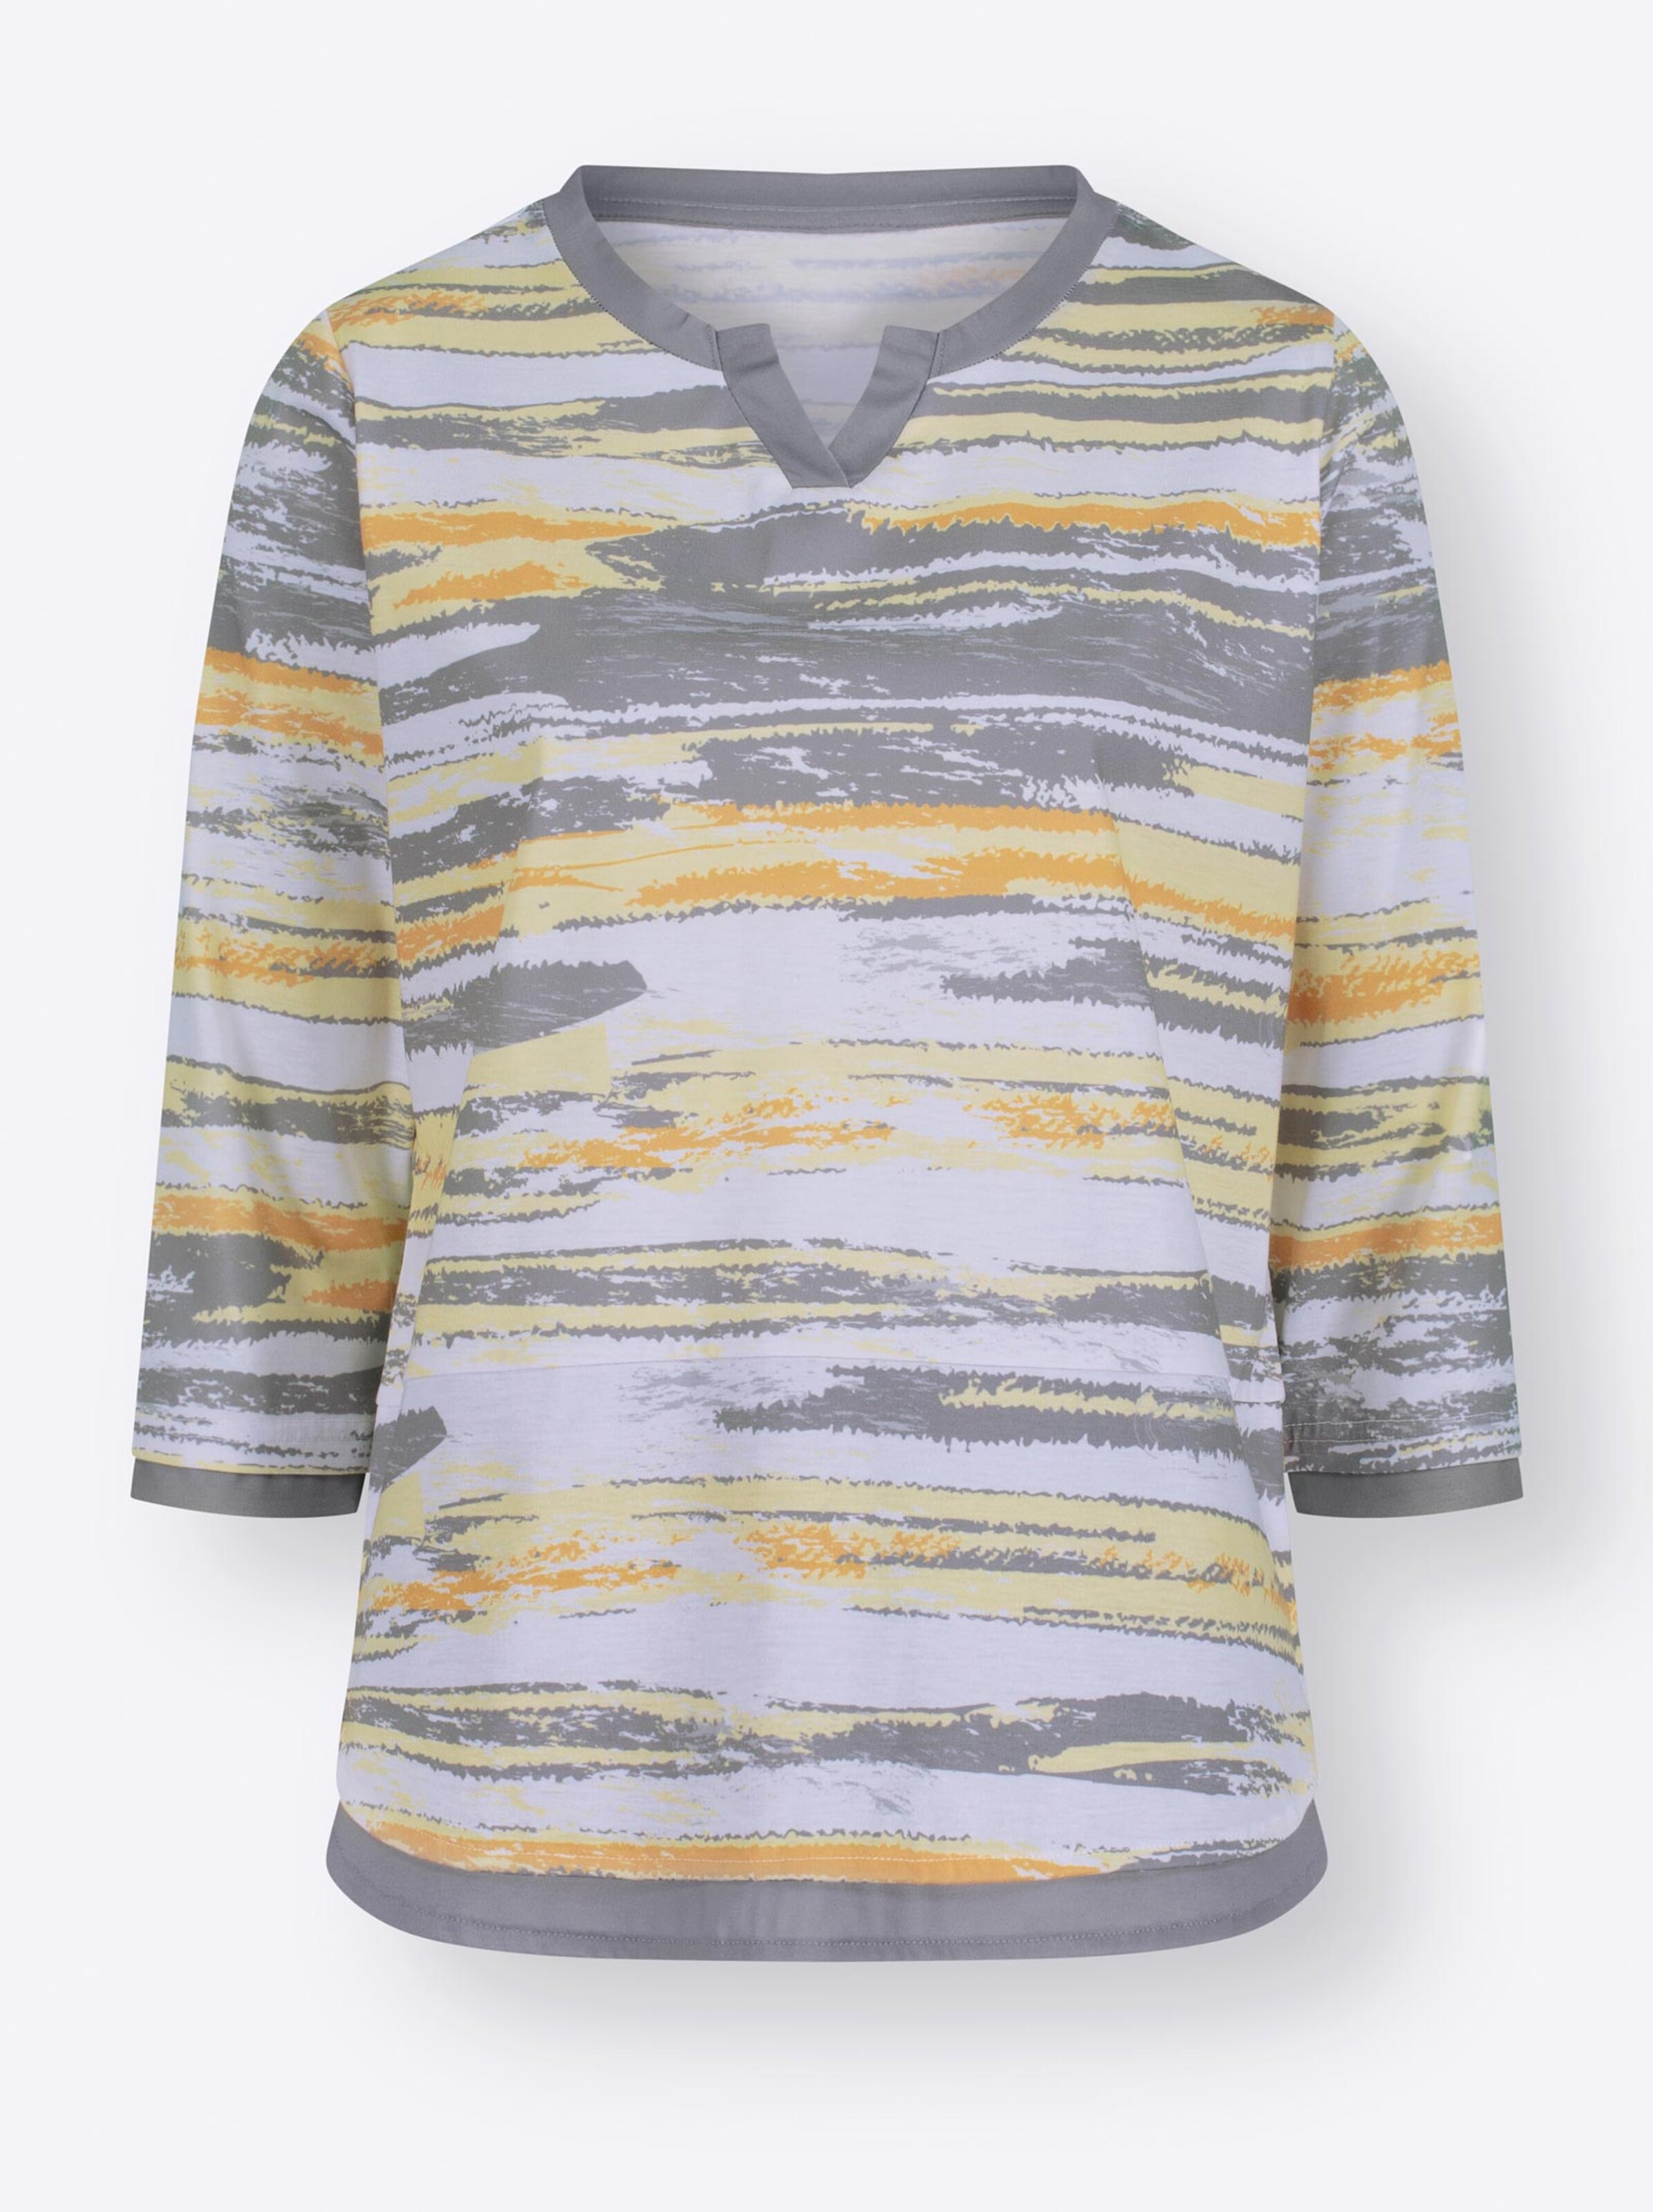 Damenmode Shirts 3/4-Arm-Shirt in grau-zitrone-bedruckt 